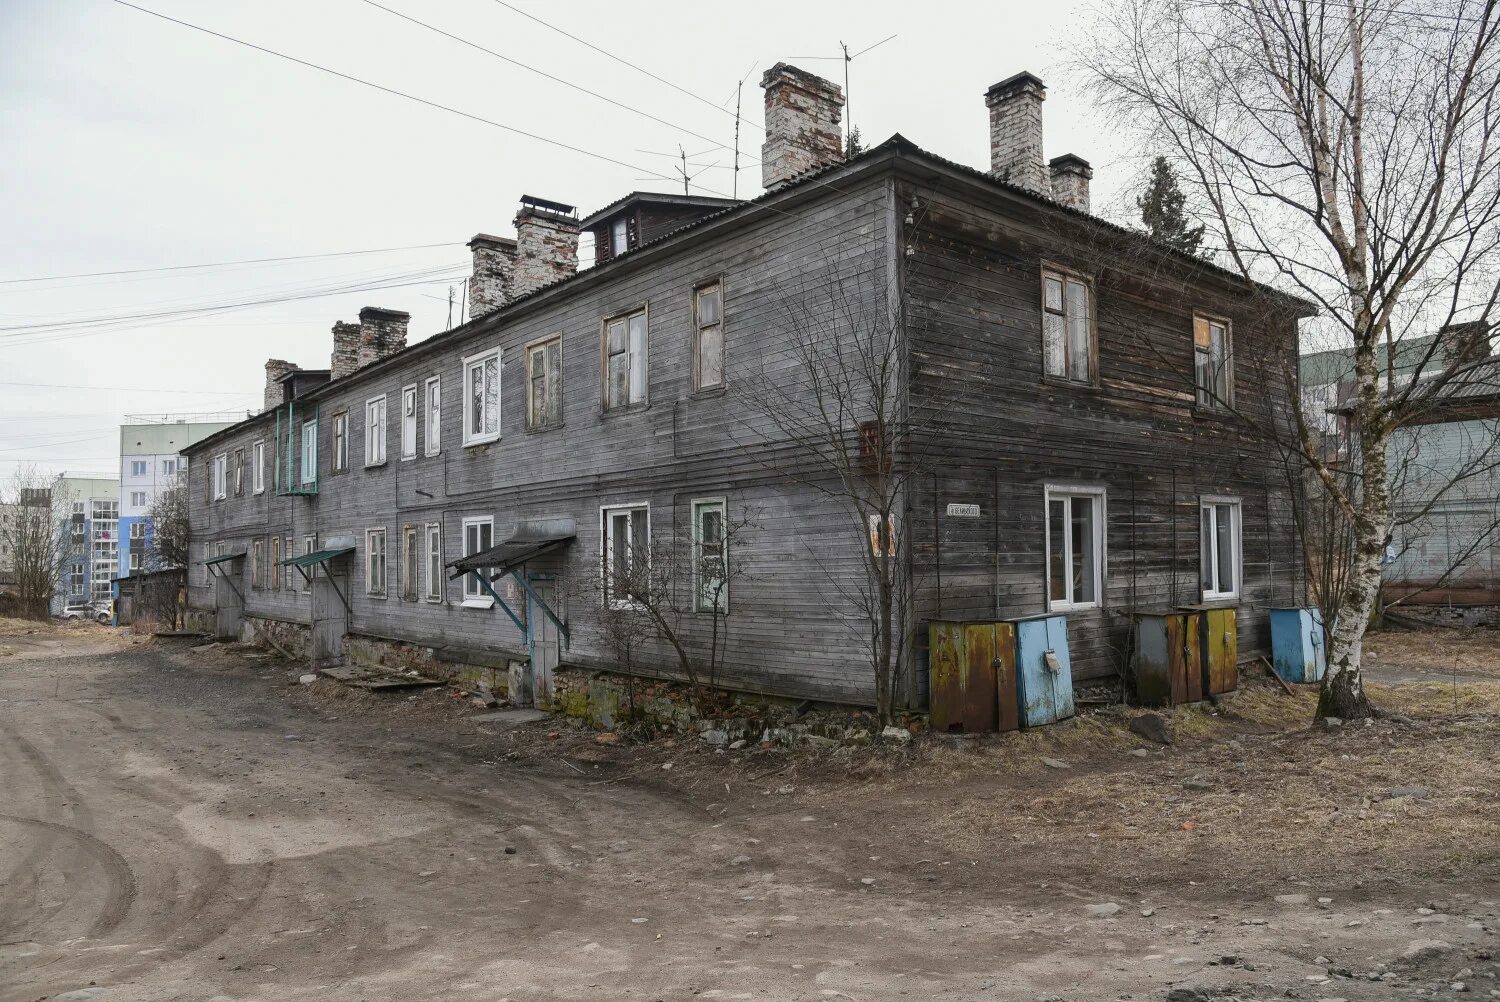 Получить жилье при расселении. Расселение аварийного жилья в Петрозаводске. Расселение аварийного жилья в Петрозаводске 2021. Расселение ветхого жилья в городе Онега-12. Расселение ветхого жилья Петрозаводск в 2023 году.